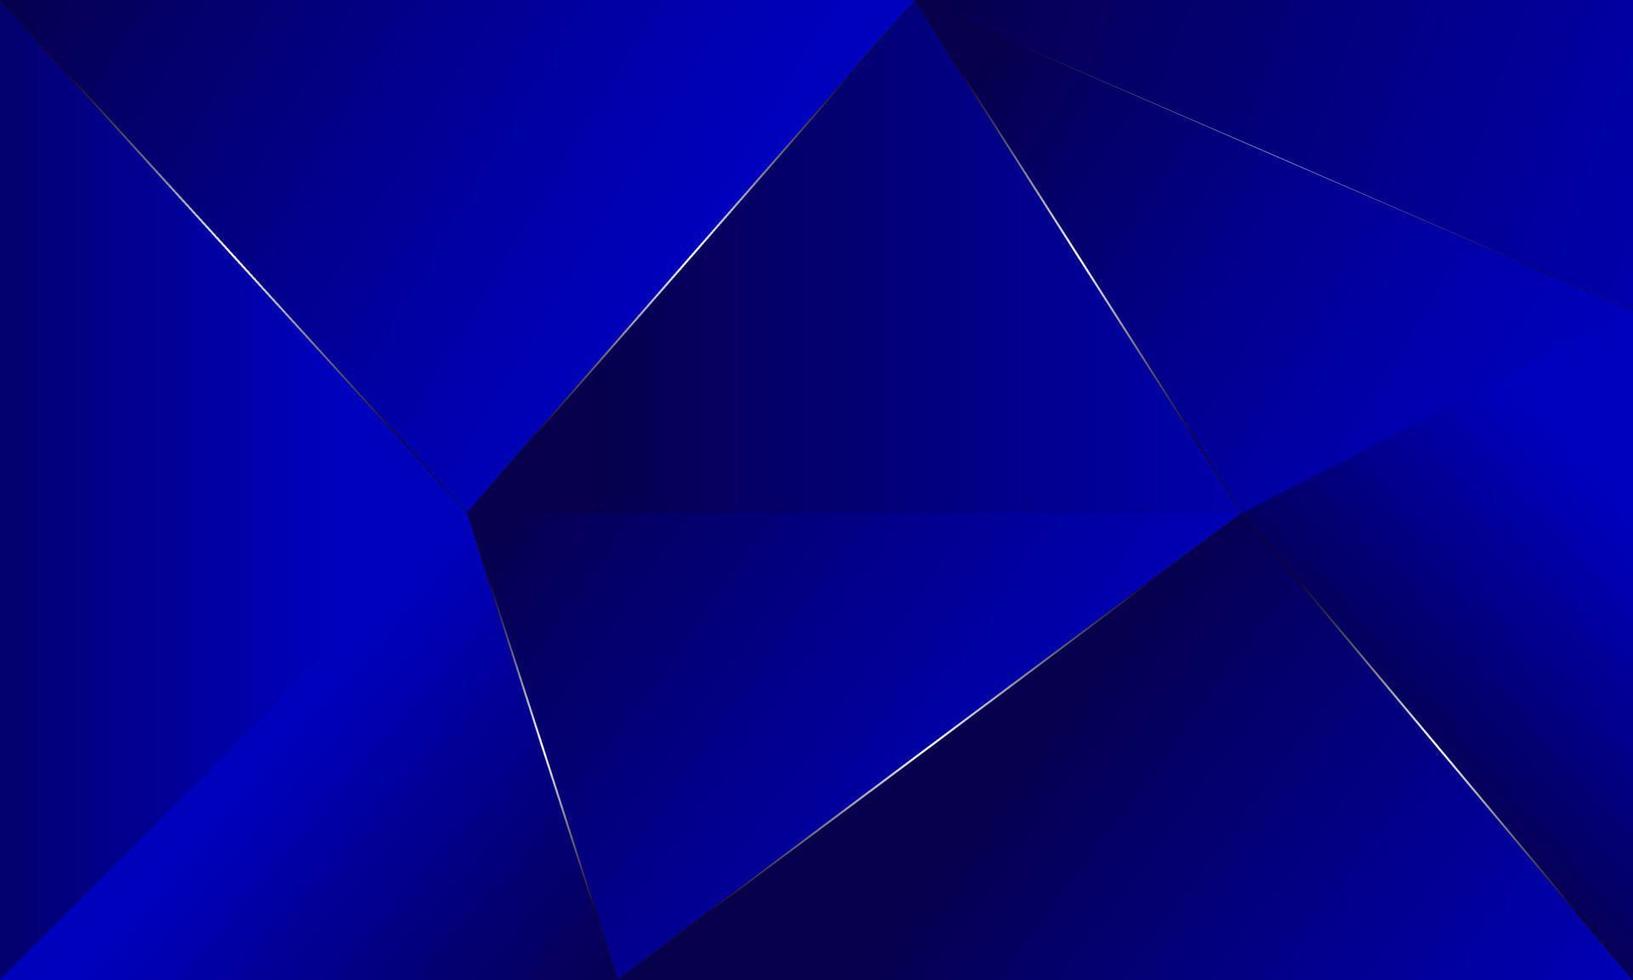 Abstrakte blaue Polygondreiecke formen Musterhintergrund mit Lichteffektluxusart. digitales Technologiekonzept des Illustrationsvektordesigns. vektor